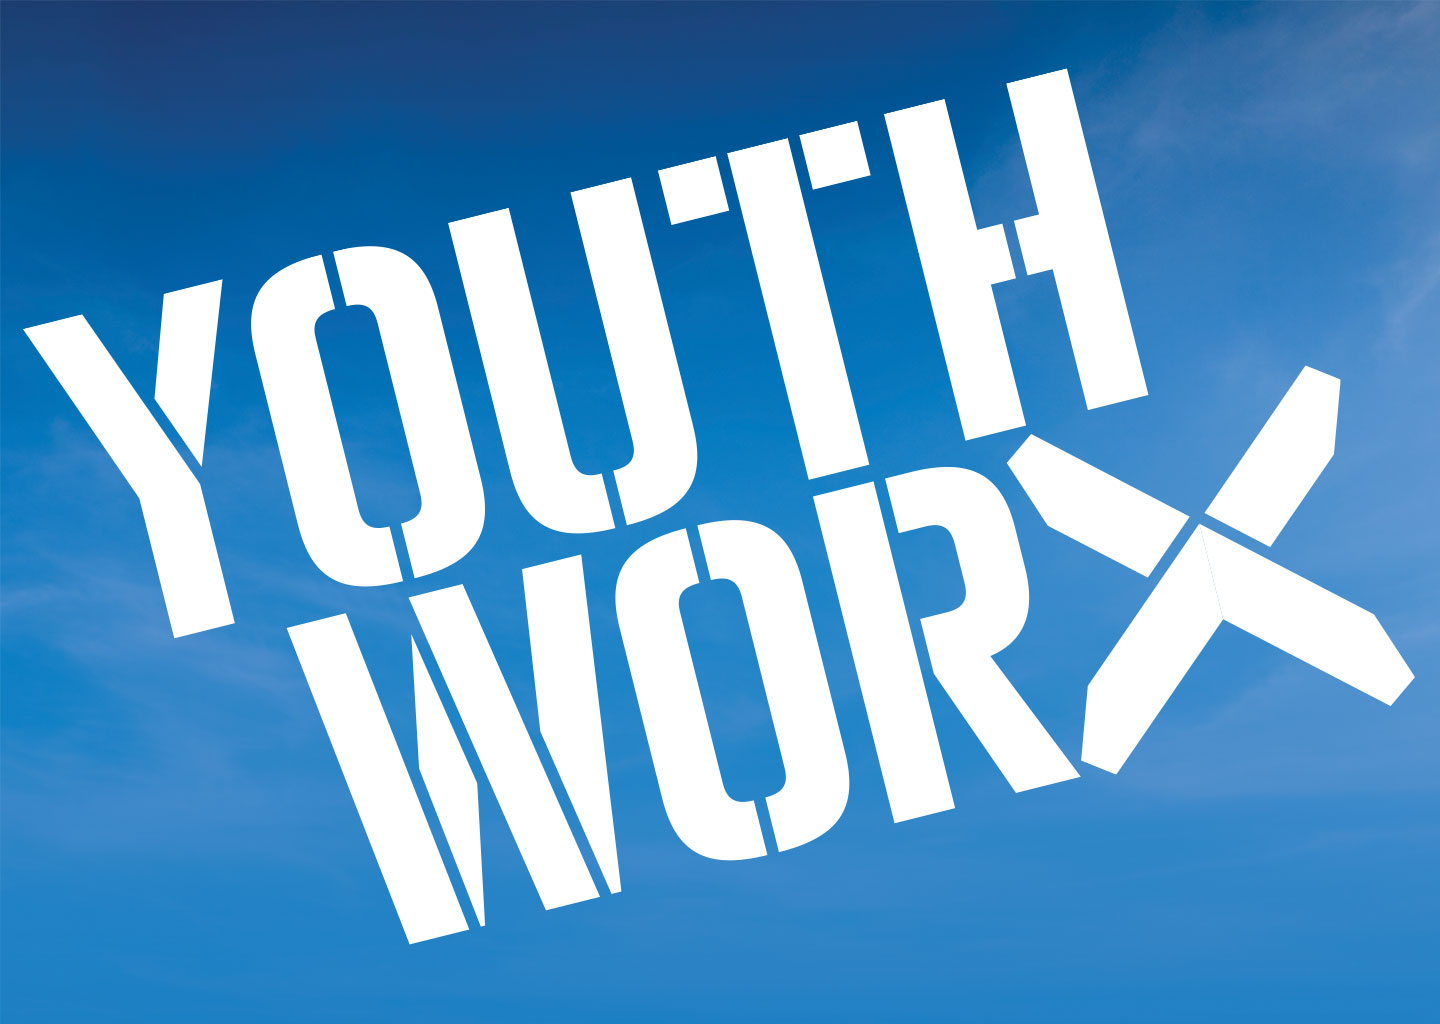 Youthworx